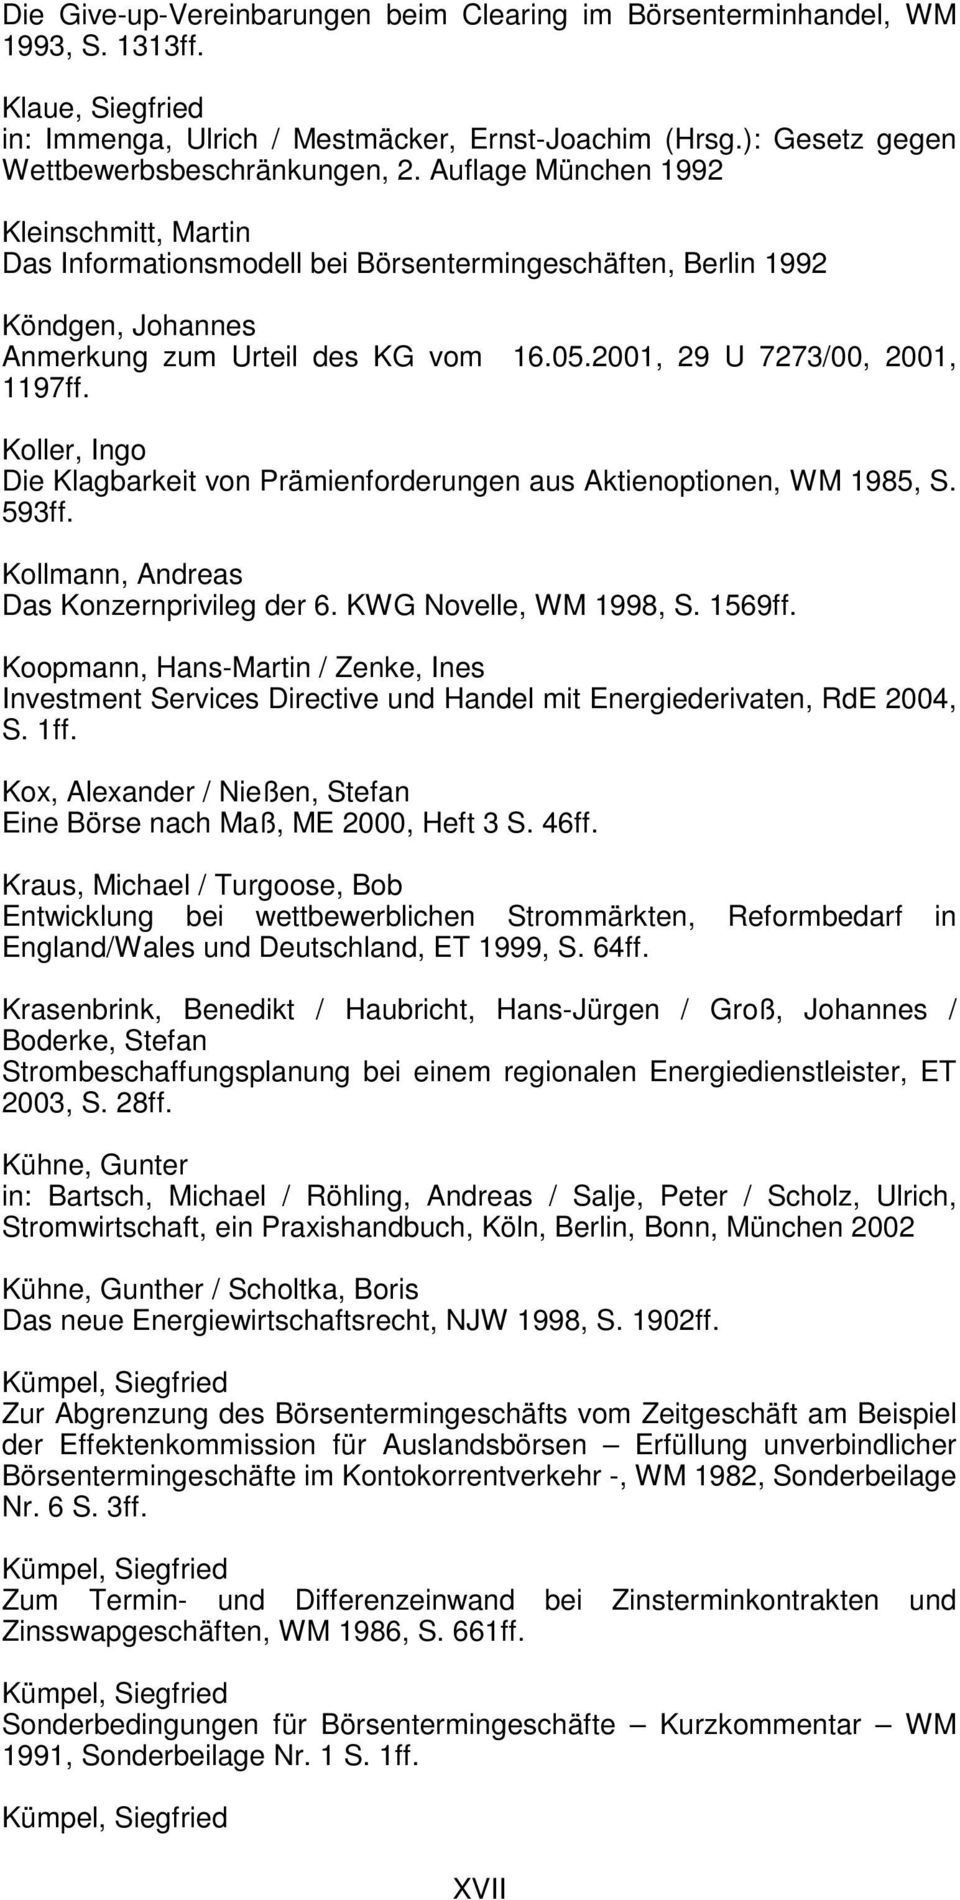 Koller, Ingo Die Klagbarkeit von Prämienforderungen aus Aktienoptionen, WM 1985, S. 593ff. Kollmann, Andreas Das Konzernprivileg der 6. KWG Novelle, WM 1998, S. 1569ff.